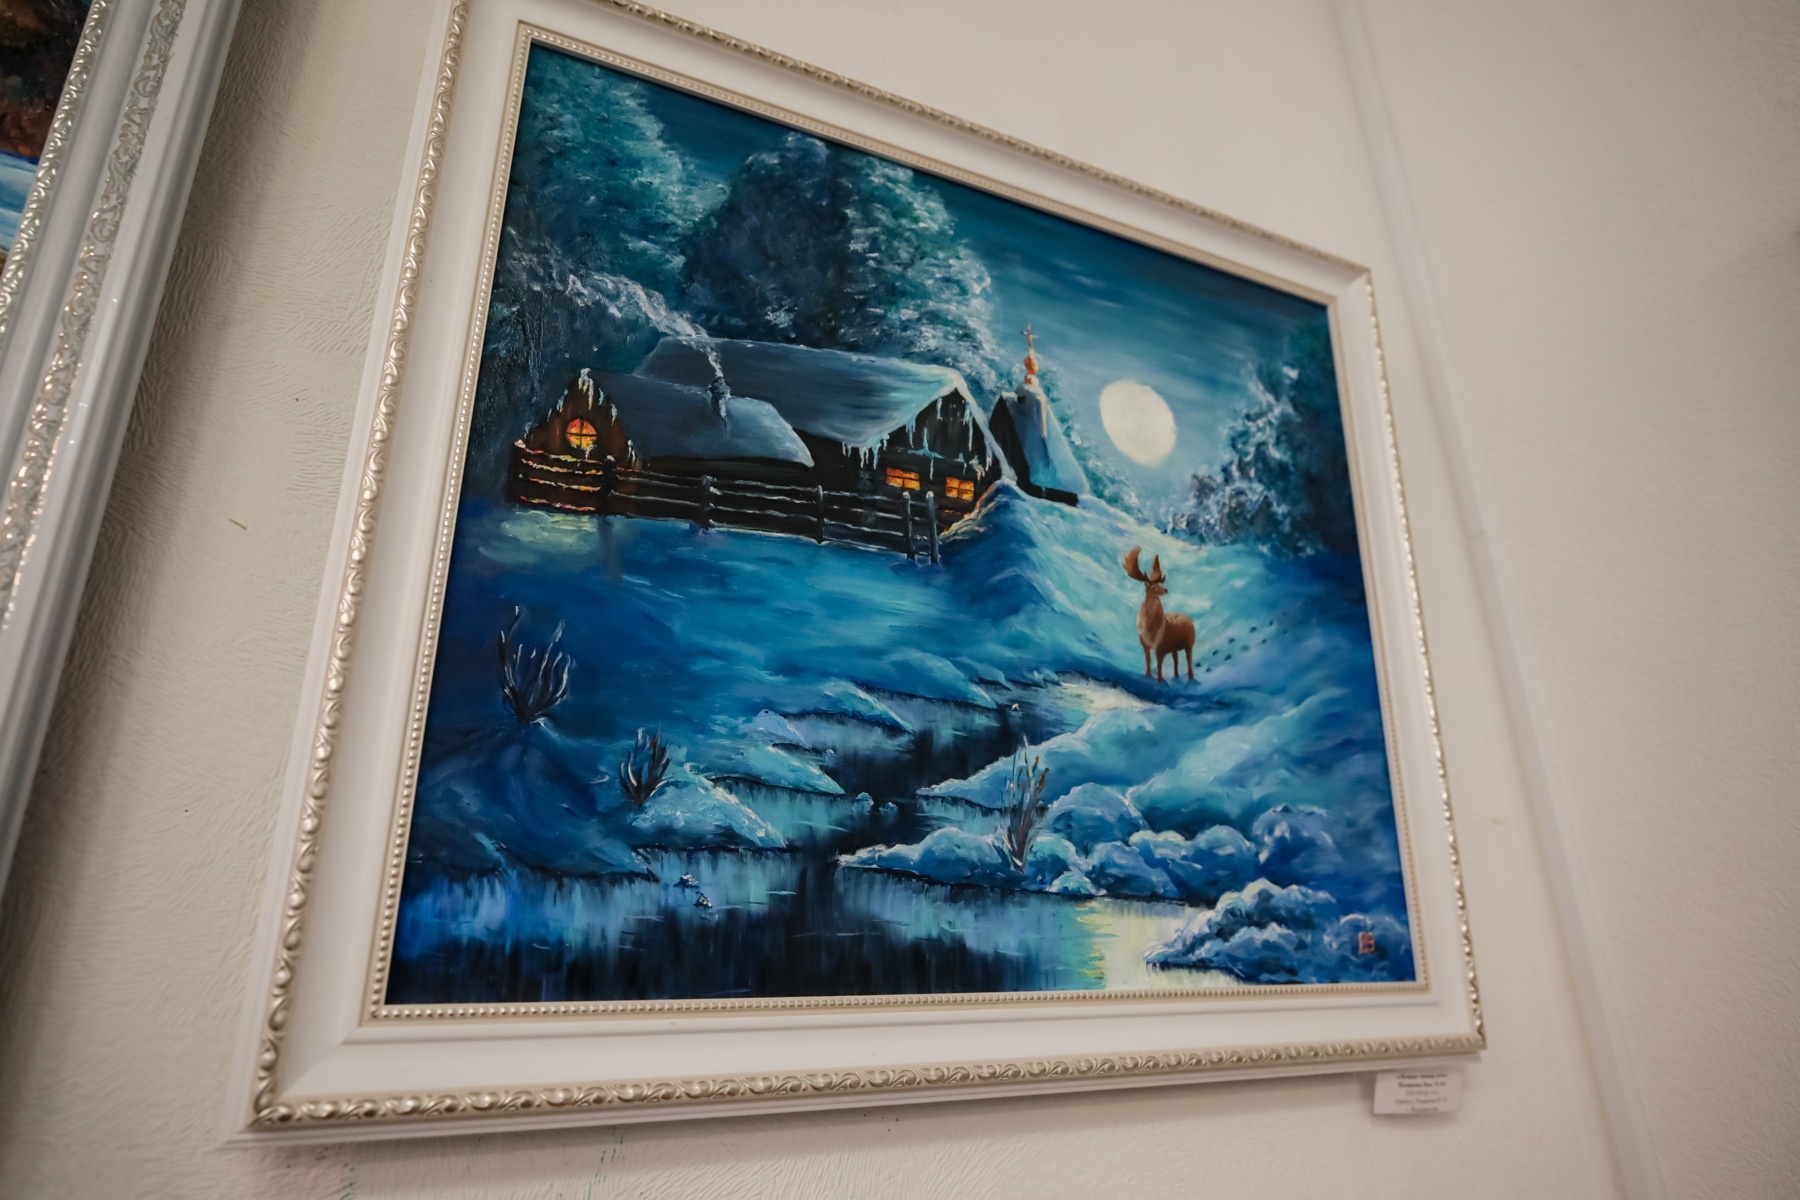 5 декабря выставка "Зимние фантазии" не работает